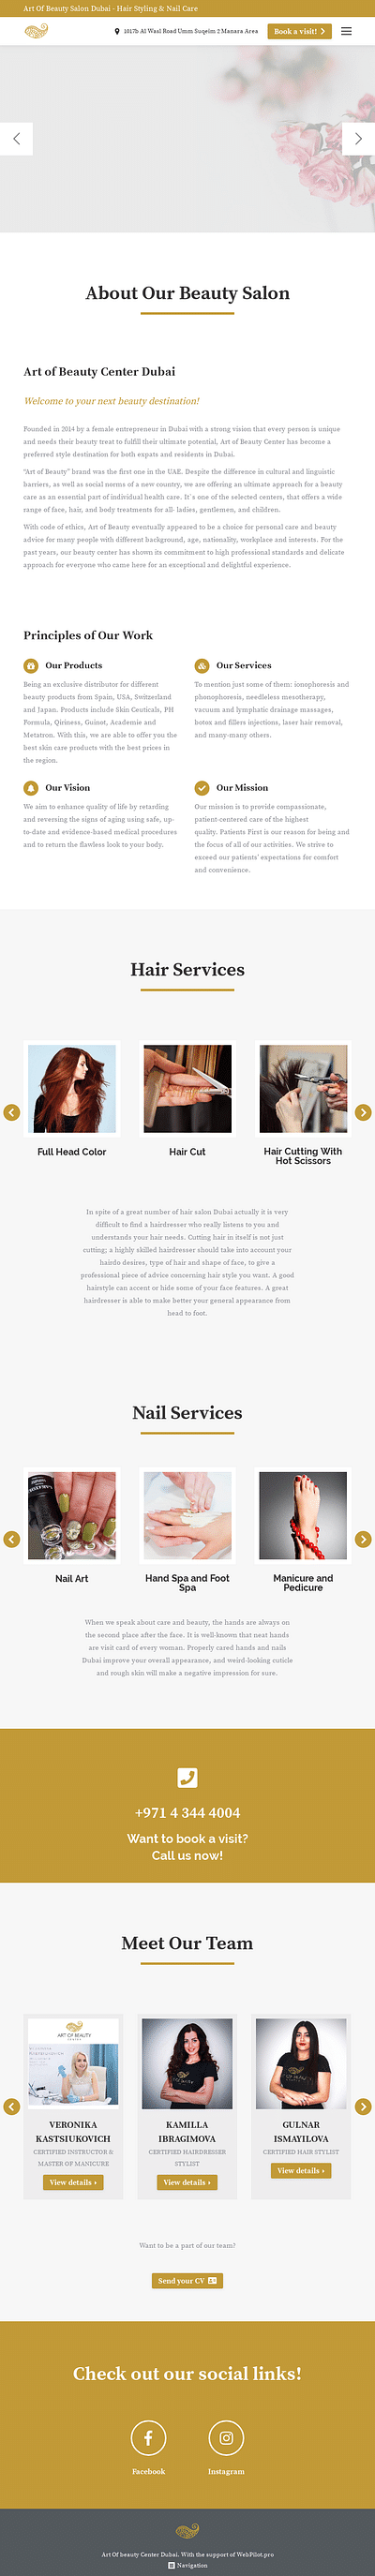 nails and hair artofbeautycenter - Creazione di siti web